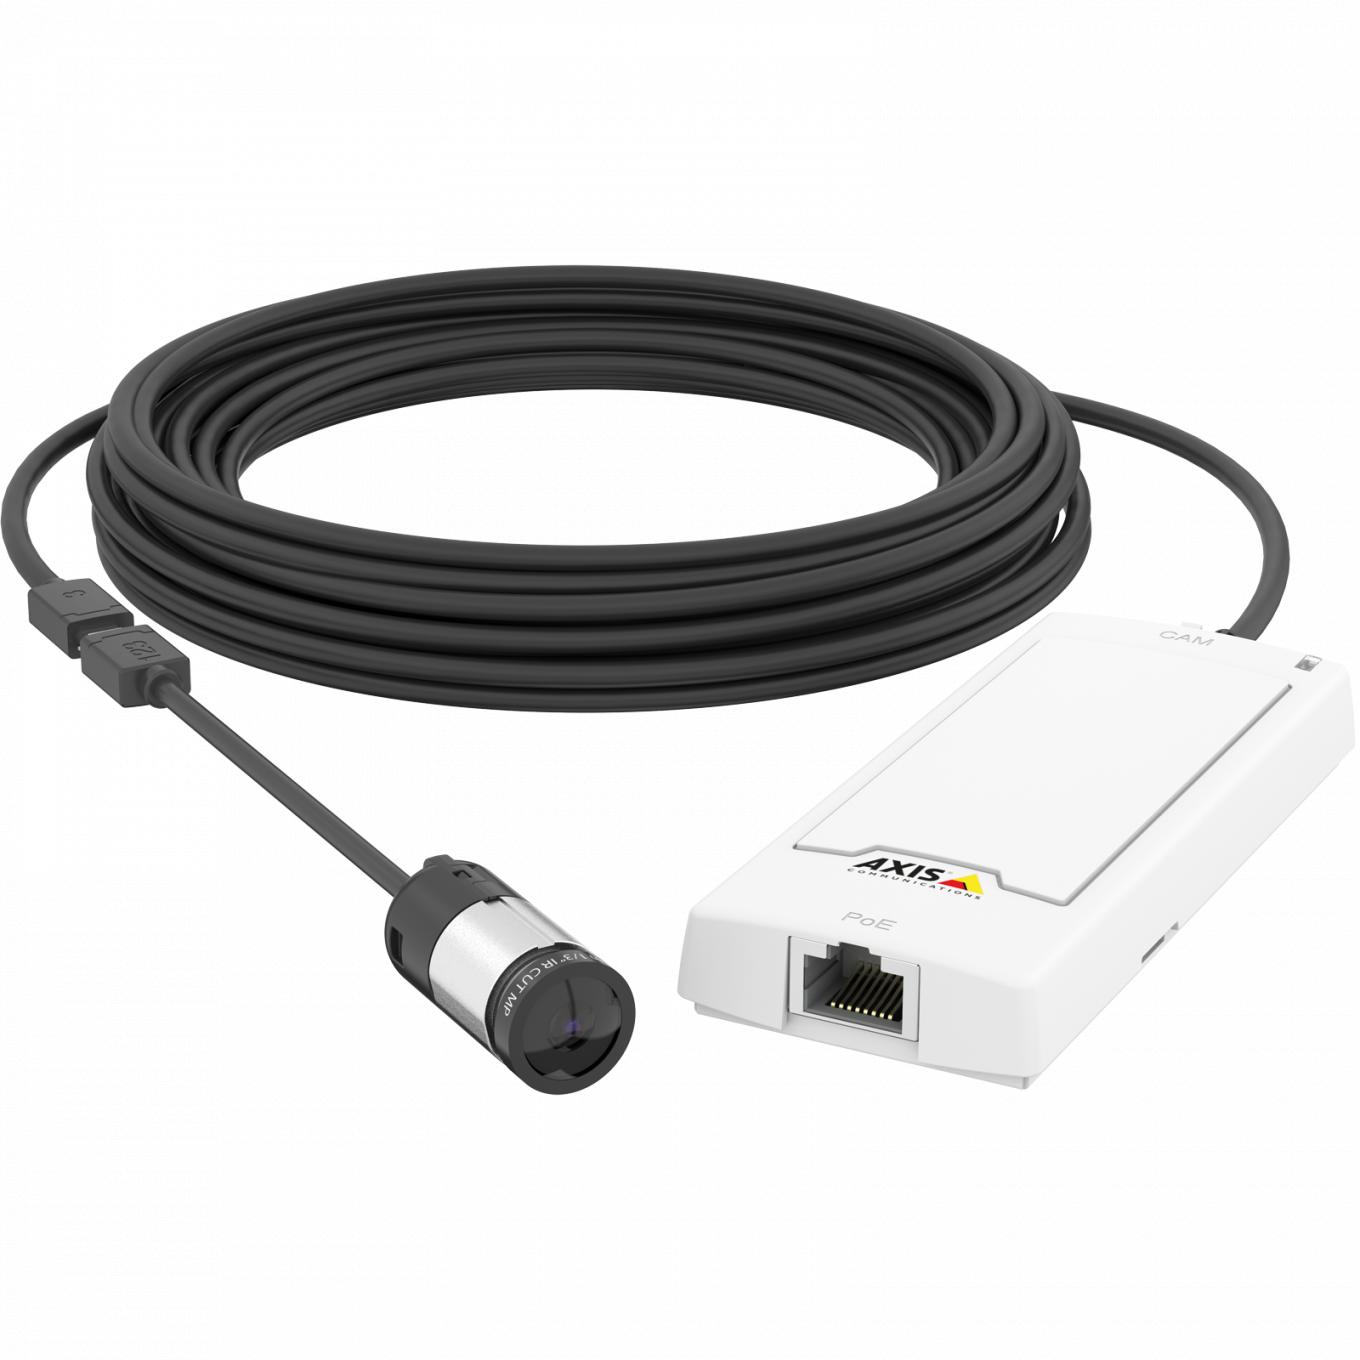  La AXIS P1244 Network Camera tiene alimentación a través de Ethernet. El producto se muestra con vista frontal. 